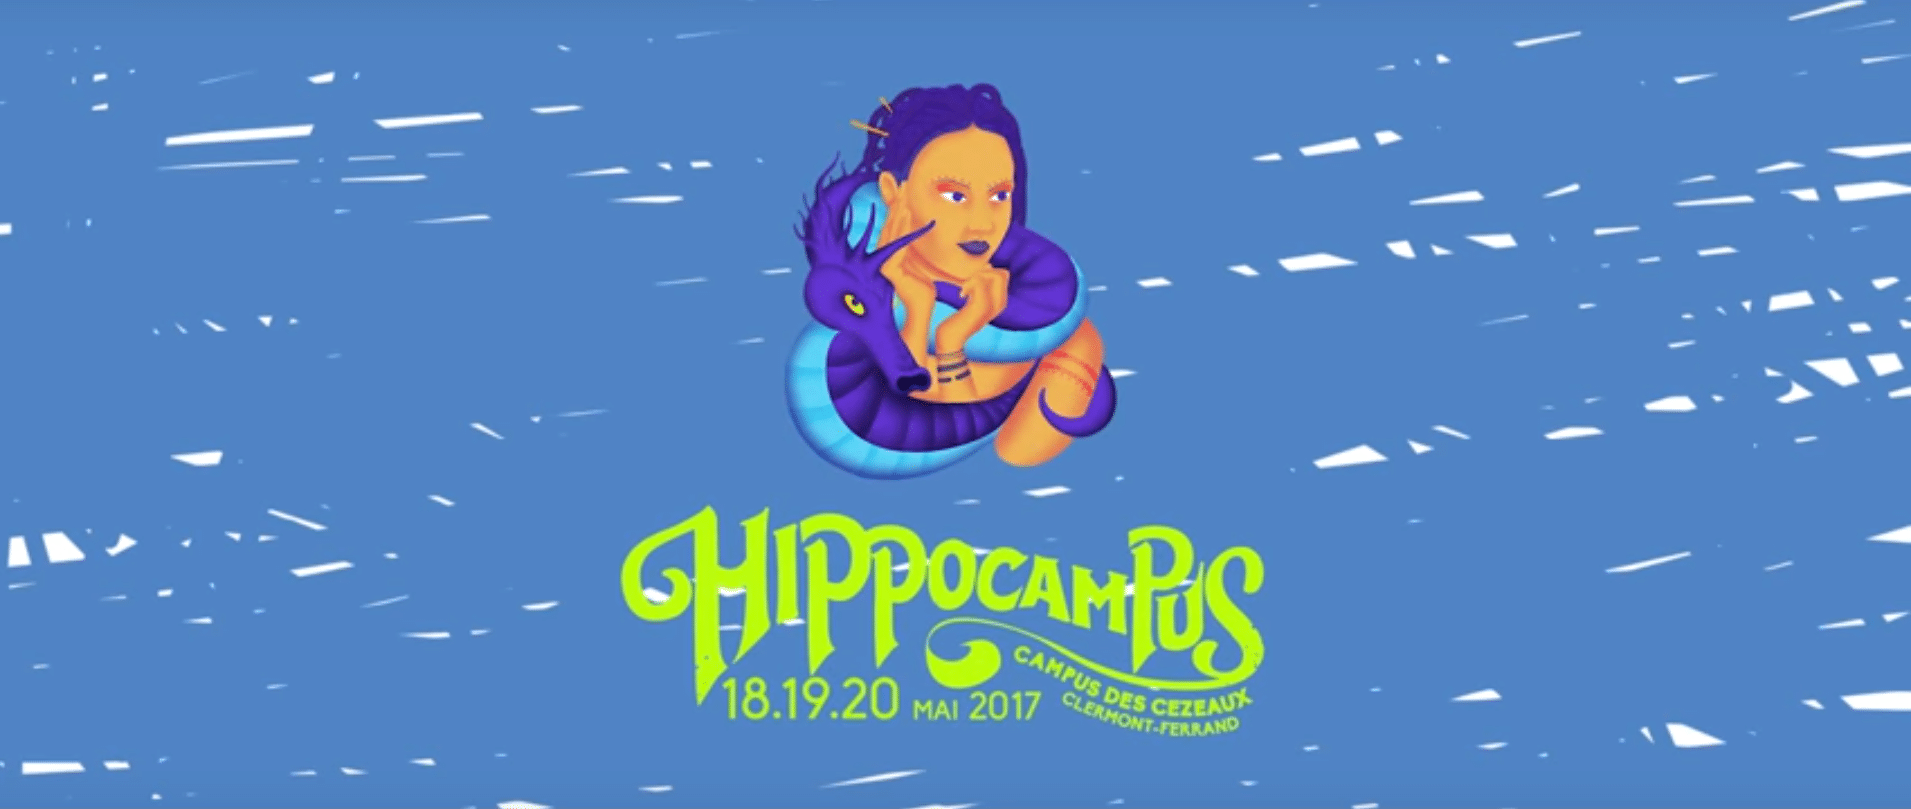 animation hippocampus 2017 par Hmwk.